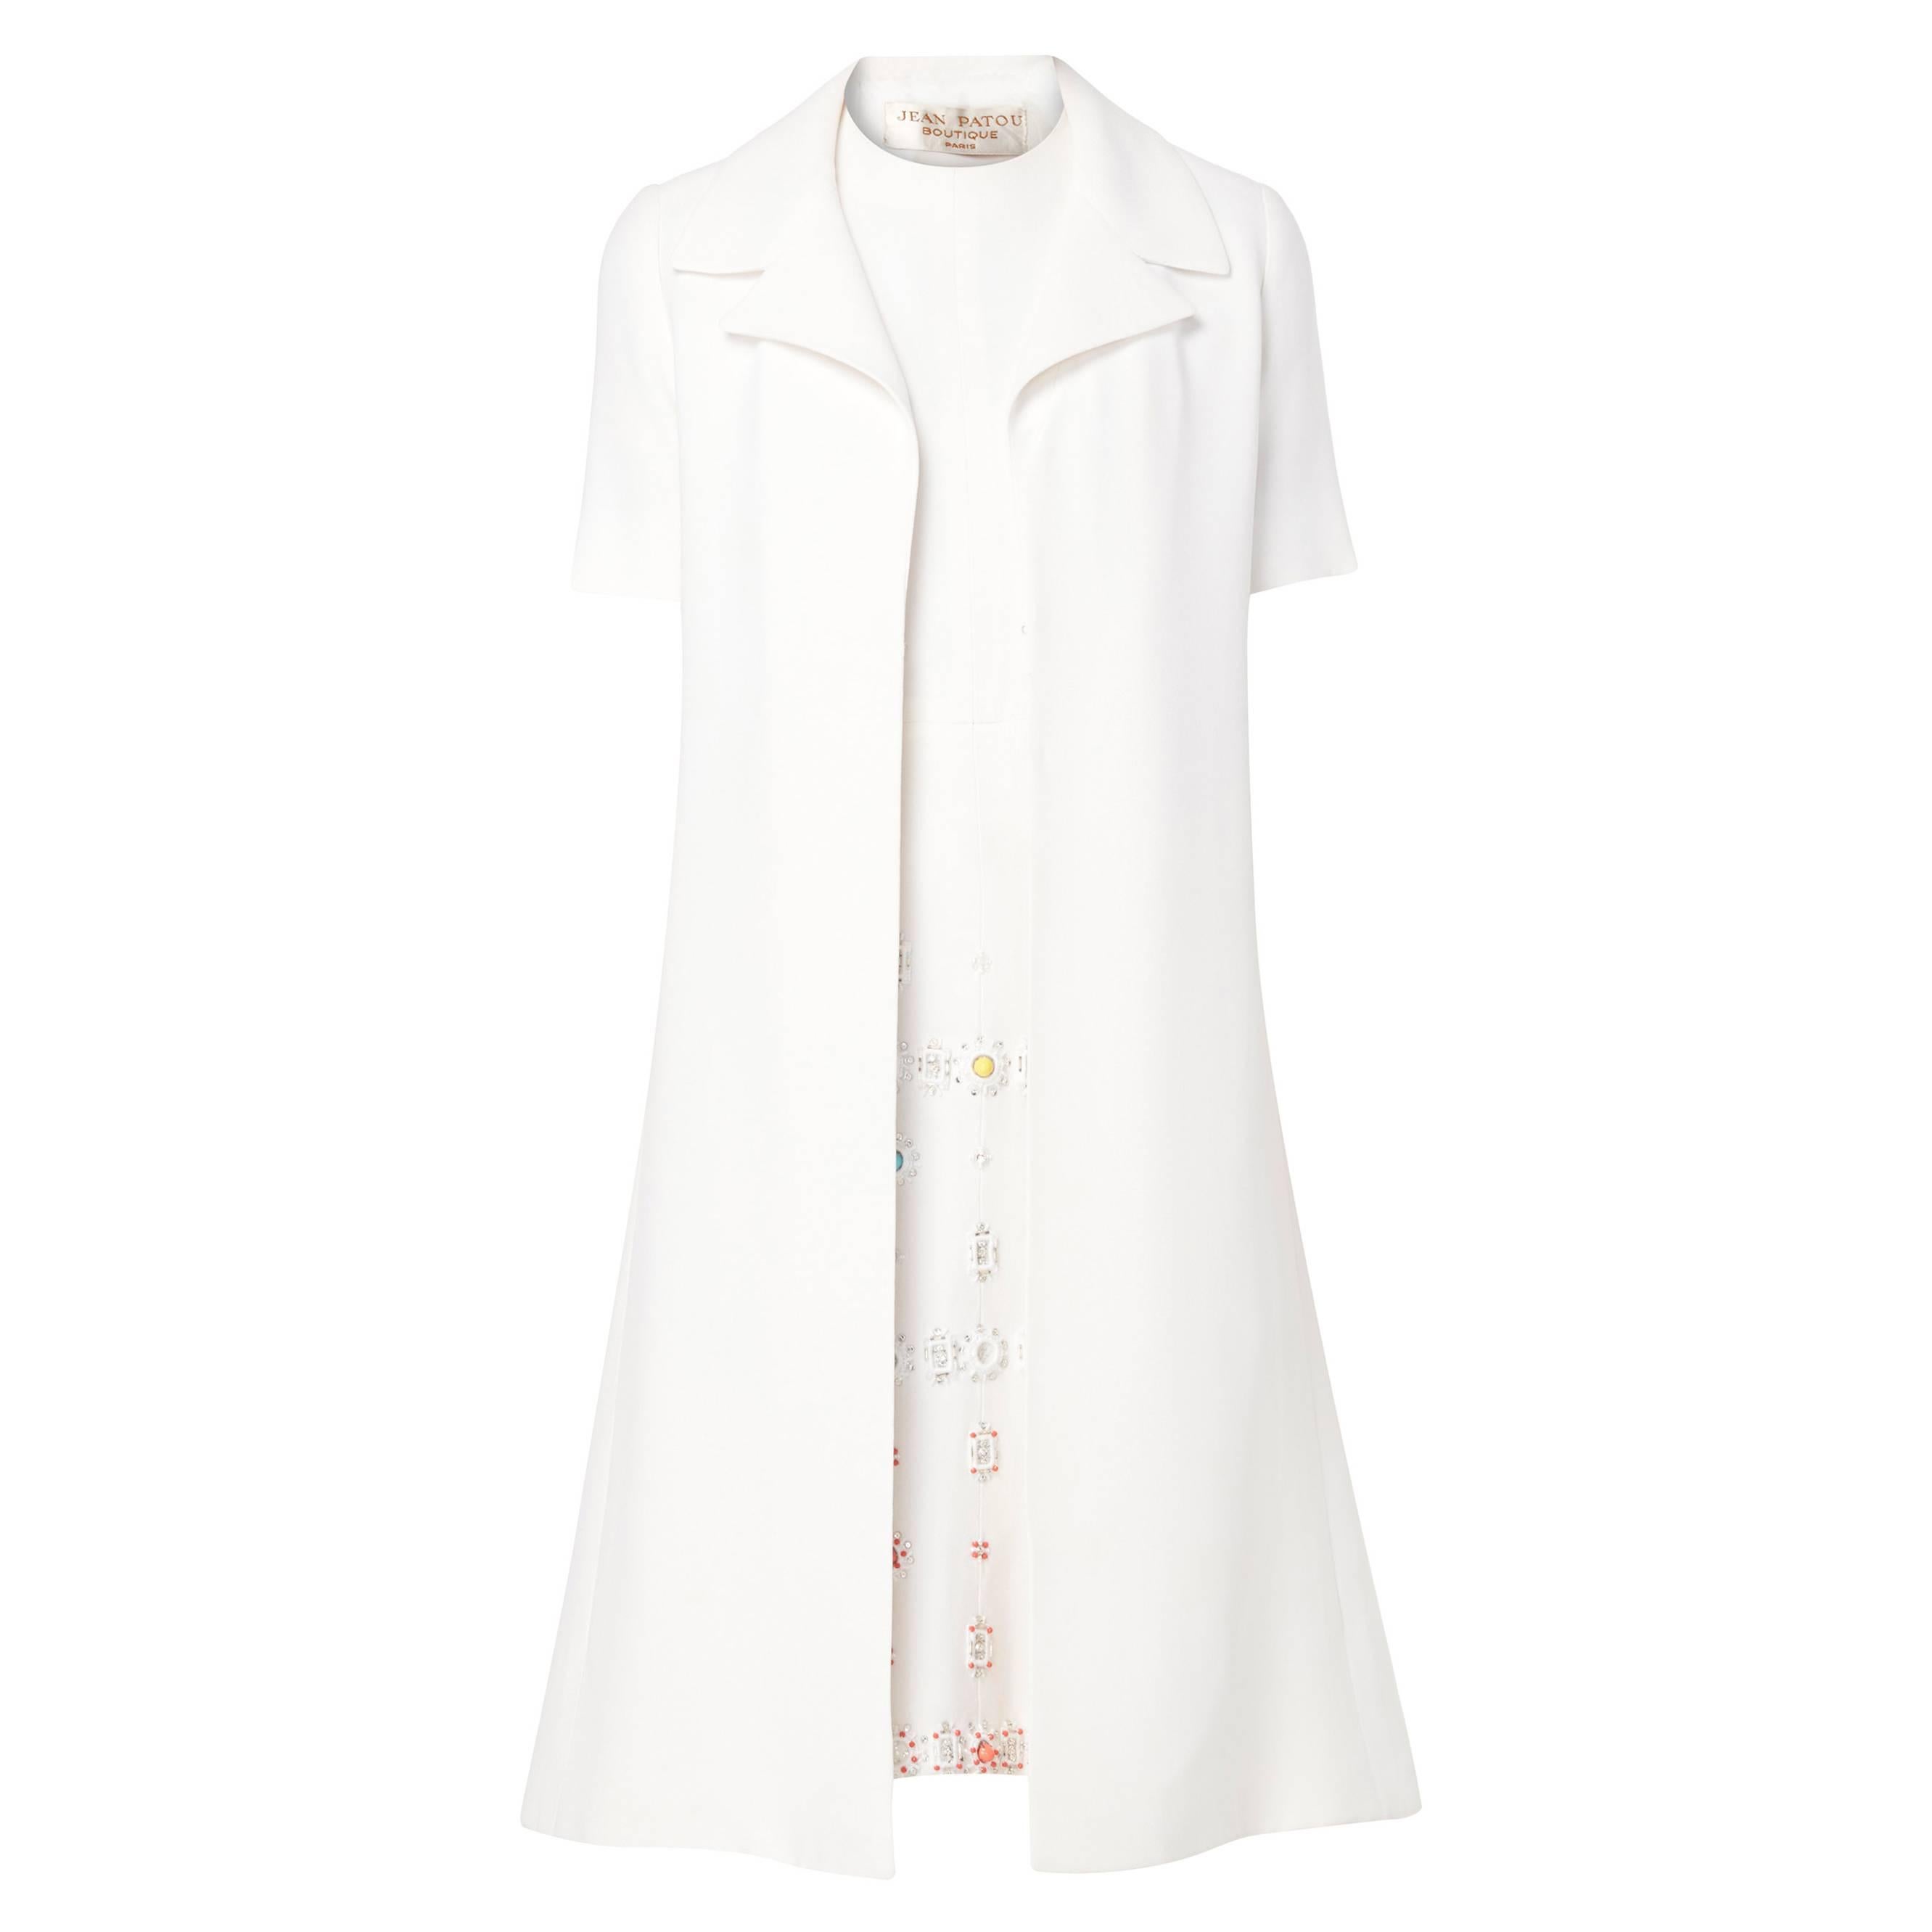 Jean Patou white dress & coat, circa 1968